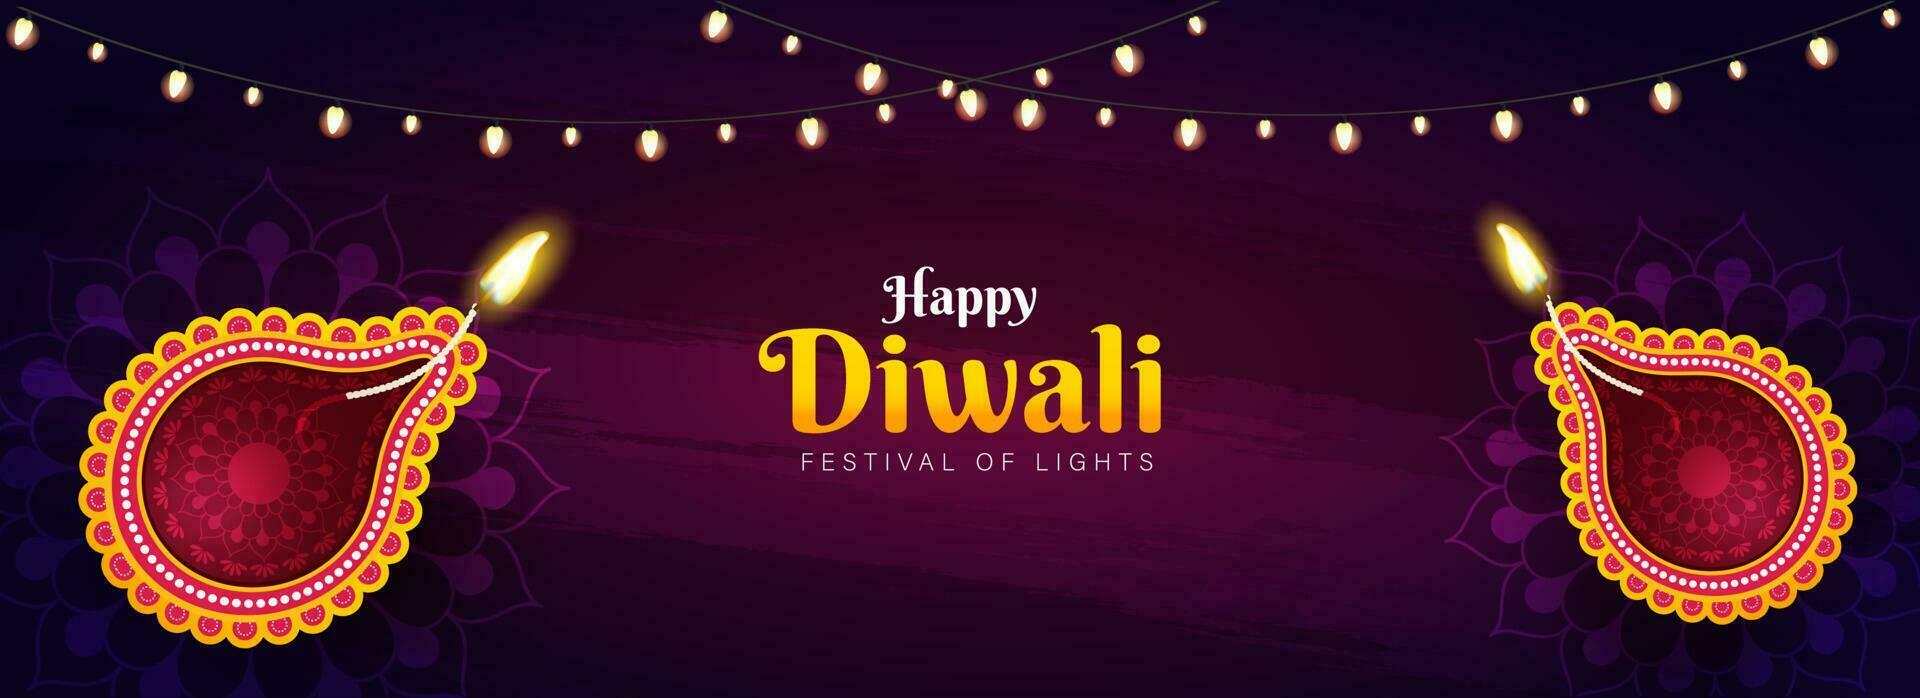 glücklich Diwali Feier Header oder Banner Design mit oben Aussicht von beleuchtet Öl Lampen und Beleuchtung Girlande dekoriert auf lila Textur Hintergrund. vektor